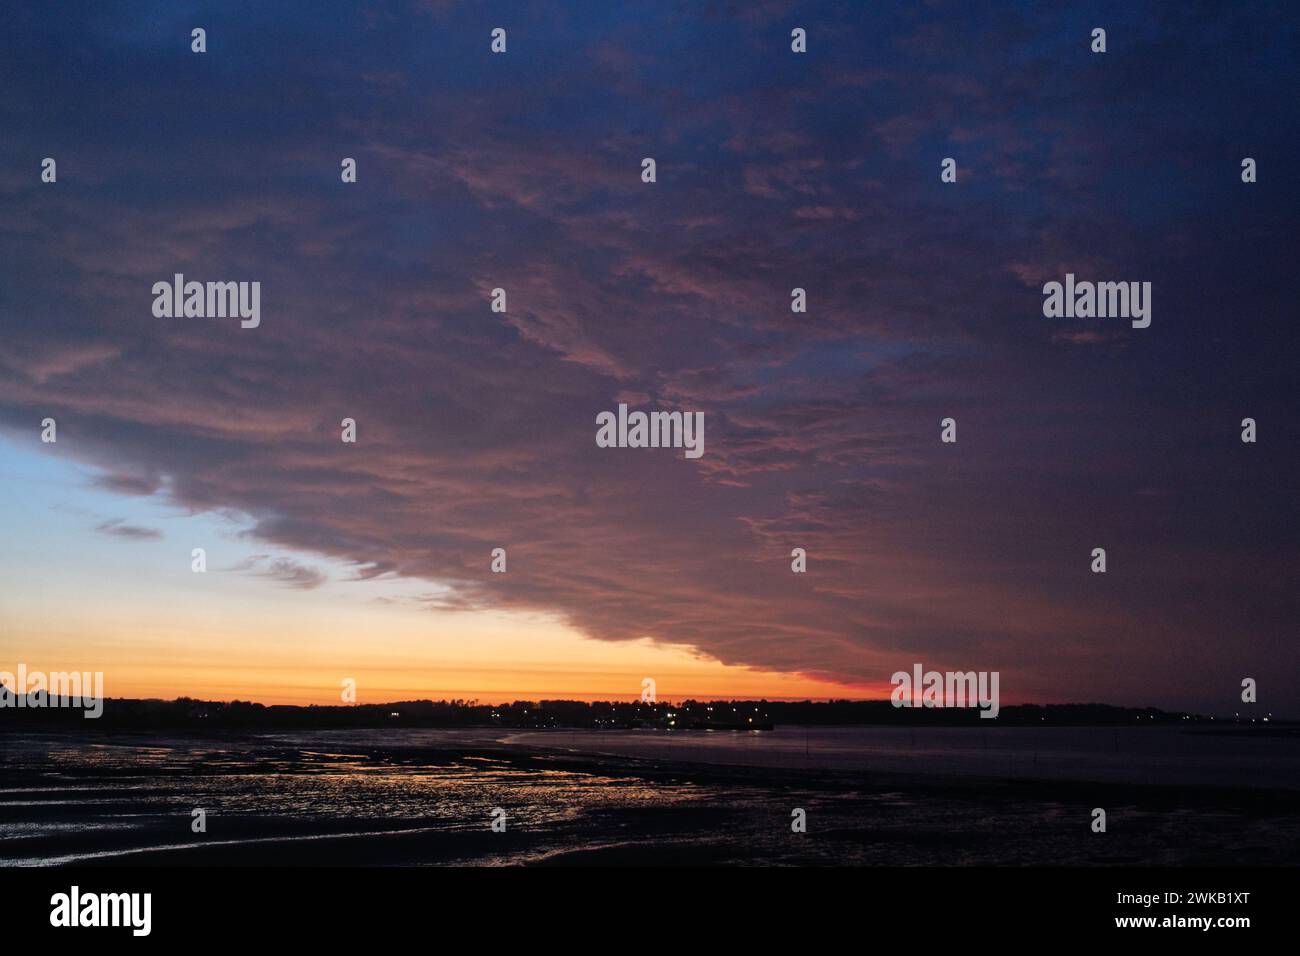 Spektakulärer Sonnenuntergang auf der Insel Amrum Foto Stock